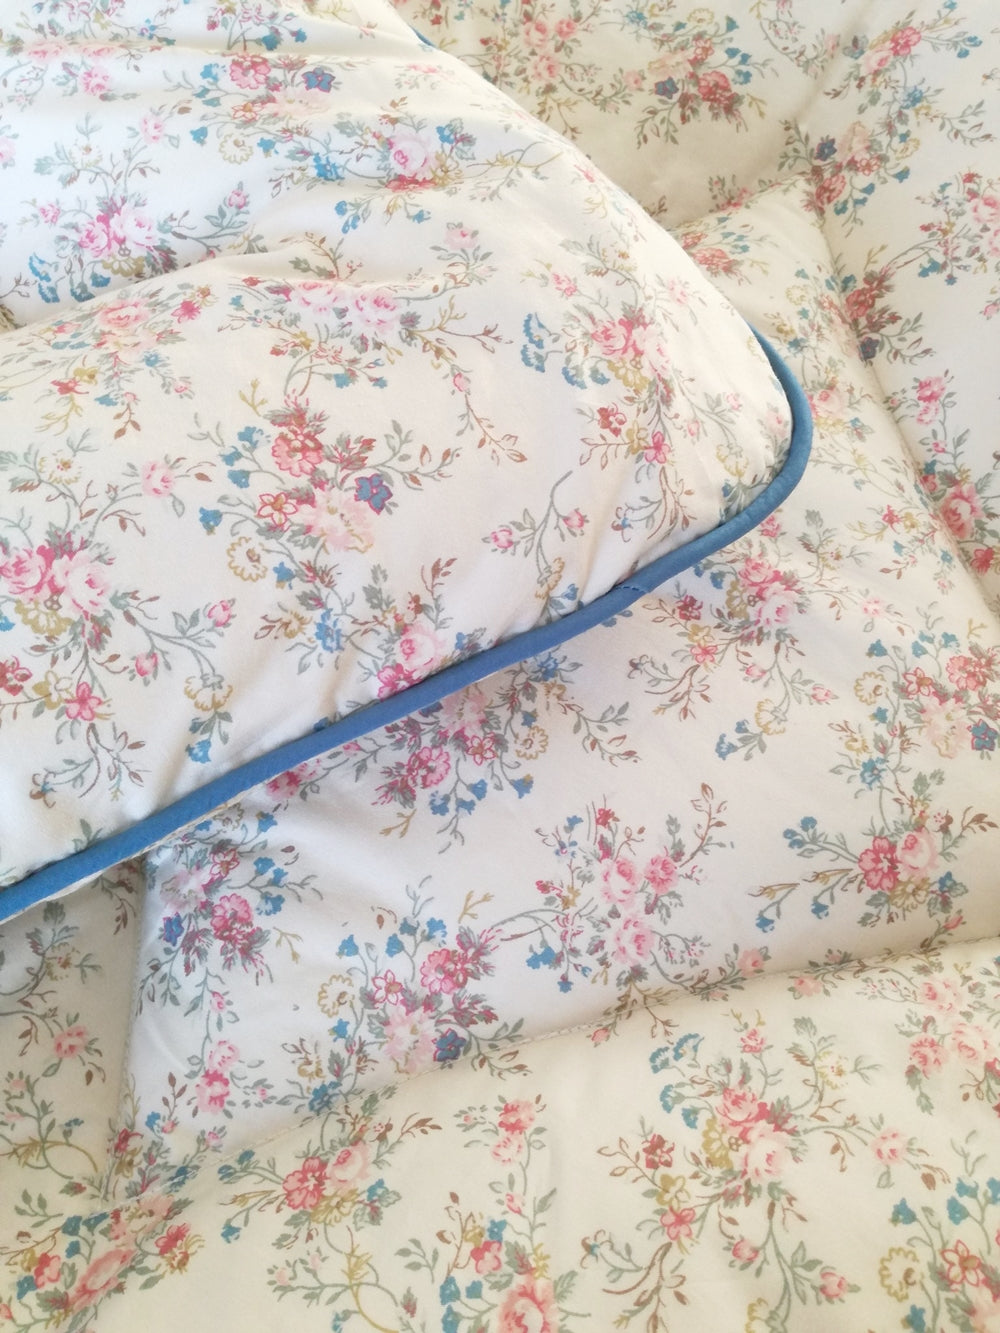 Prettiest Vintage Inspired Cream Fl Eiderdown Bedspread Quilt Uk Dearest Violet